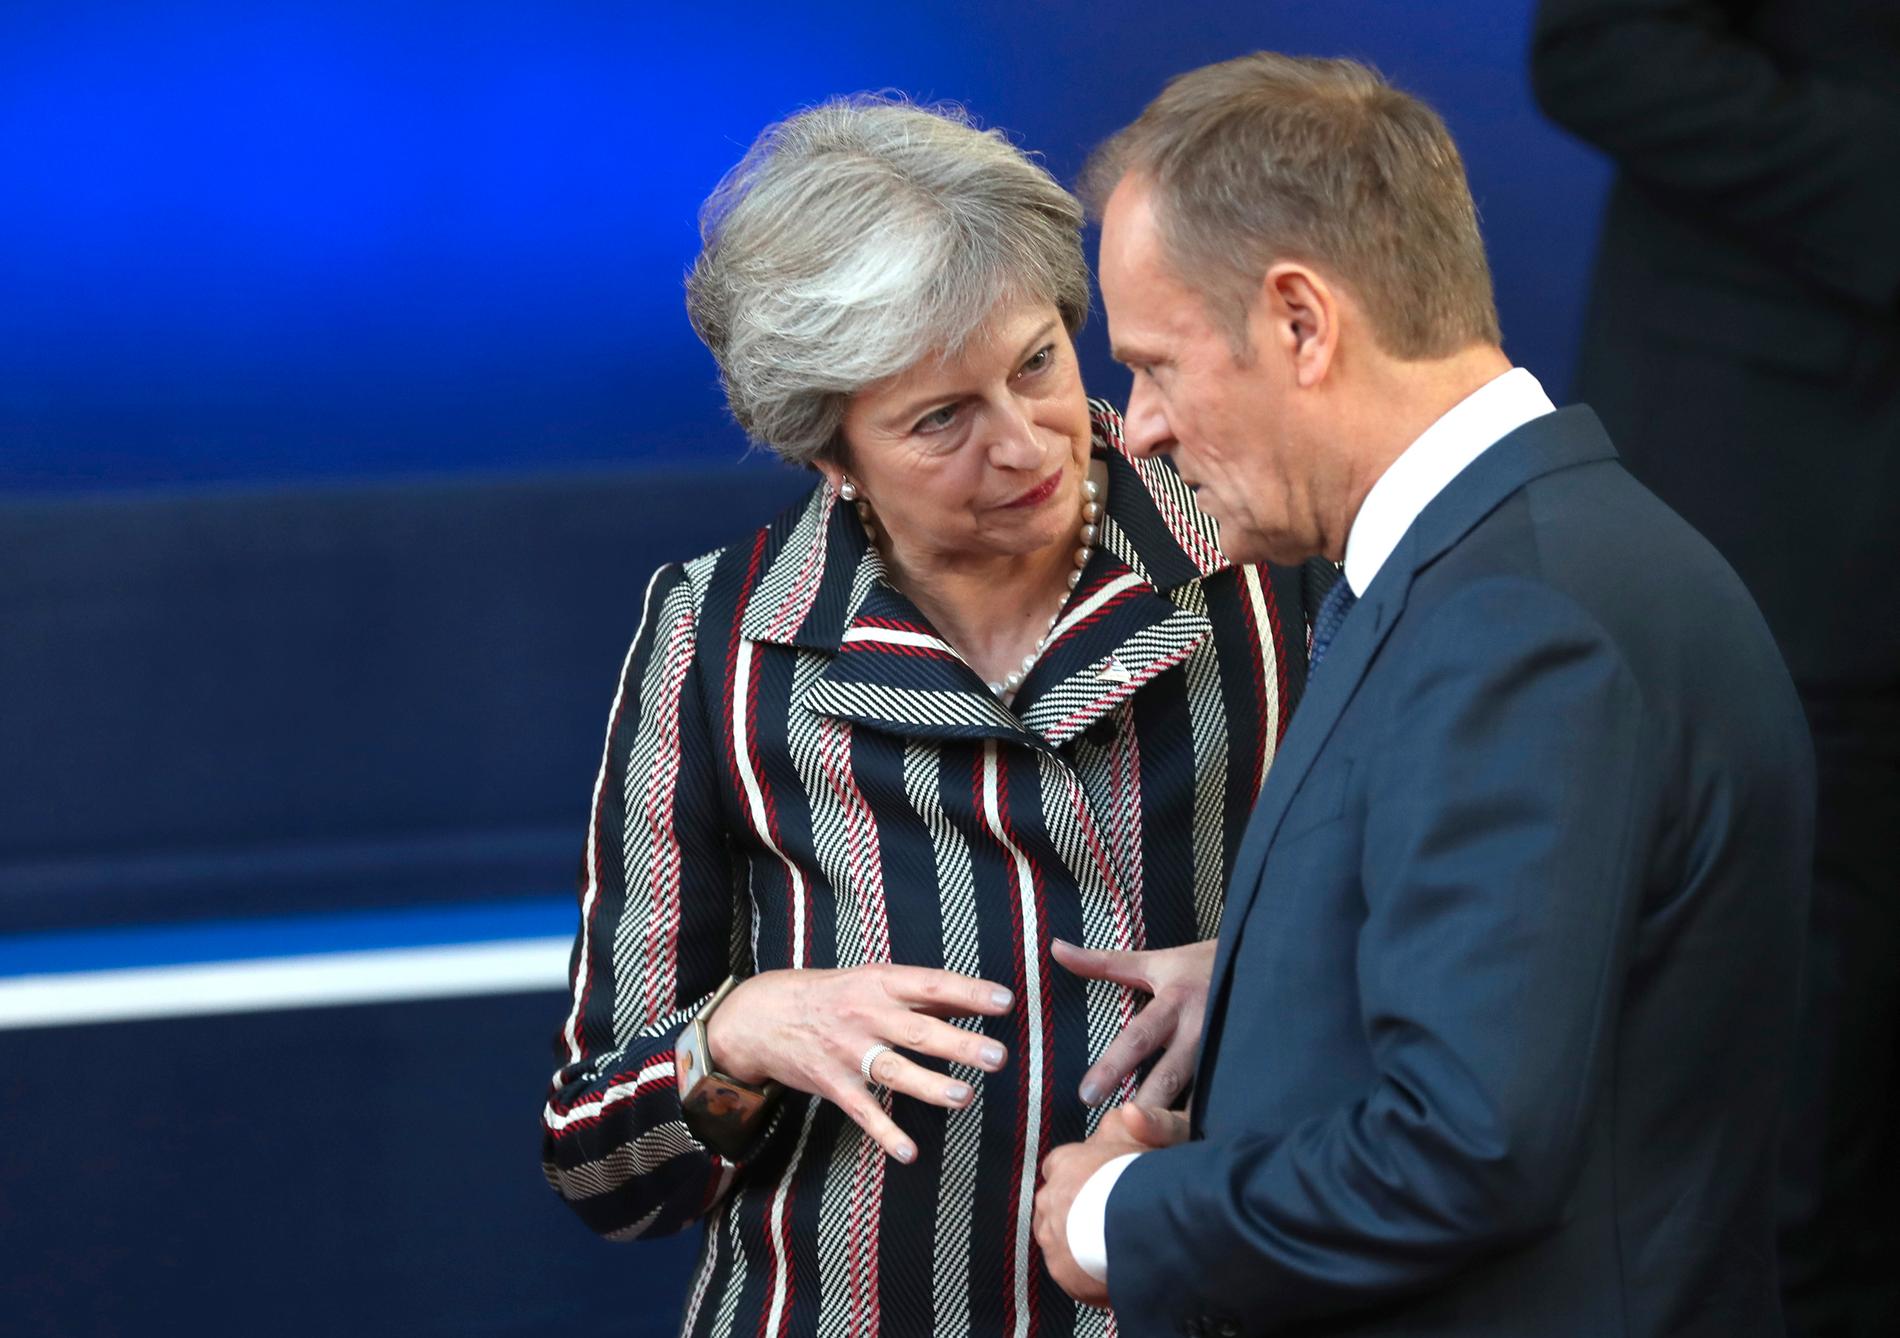 Storbritanniens premiärminister Theresa May i intensivt samtal med EU:s permanente rådsordförande Donald Tusk under förra veckans EU-Asien-toppmöte i Bryssel.